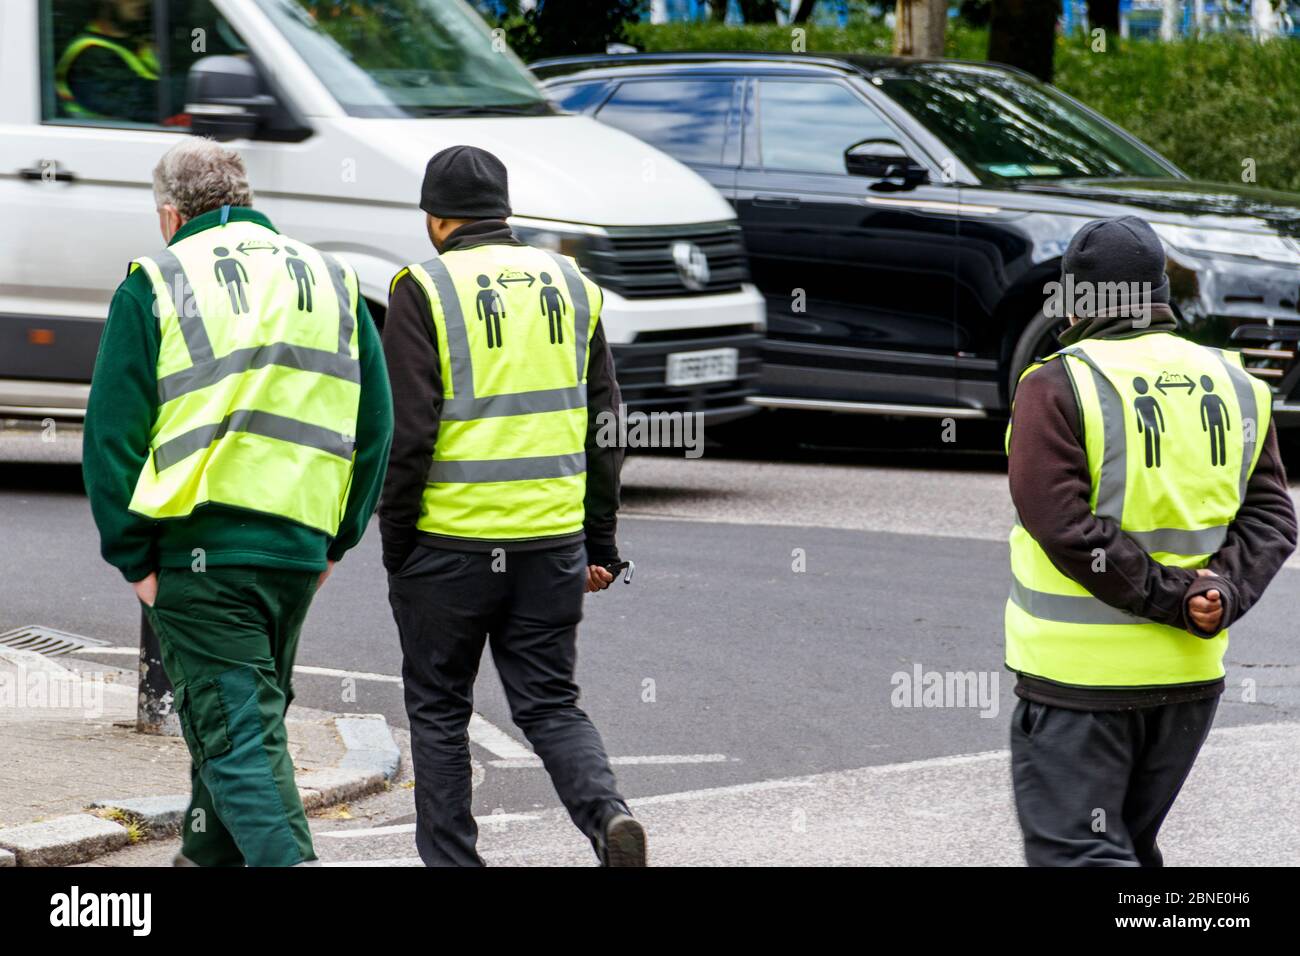 Drei ratsarbeiter ignorieren den sozialen Distanzierungstat, 2 Meter voneinander entfernt zu bleiben, geschrieben auf der Rückseite ihrer gut sichtbaren Jacken, London, Großbritannien Stockfoto